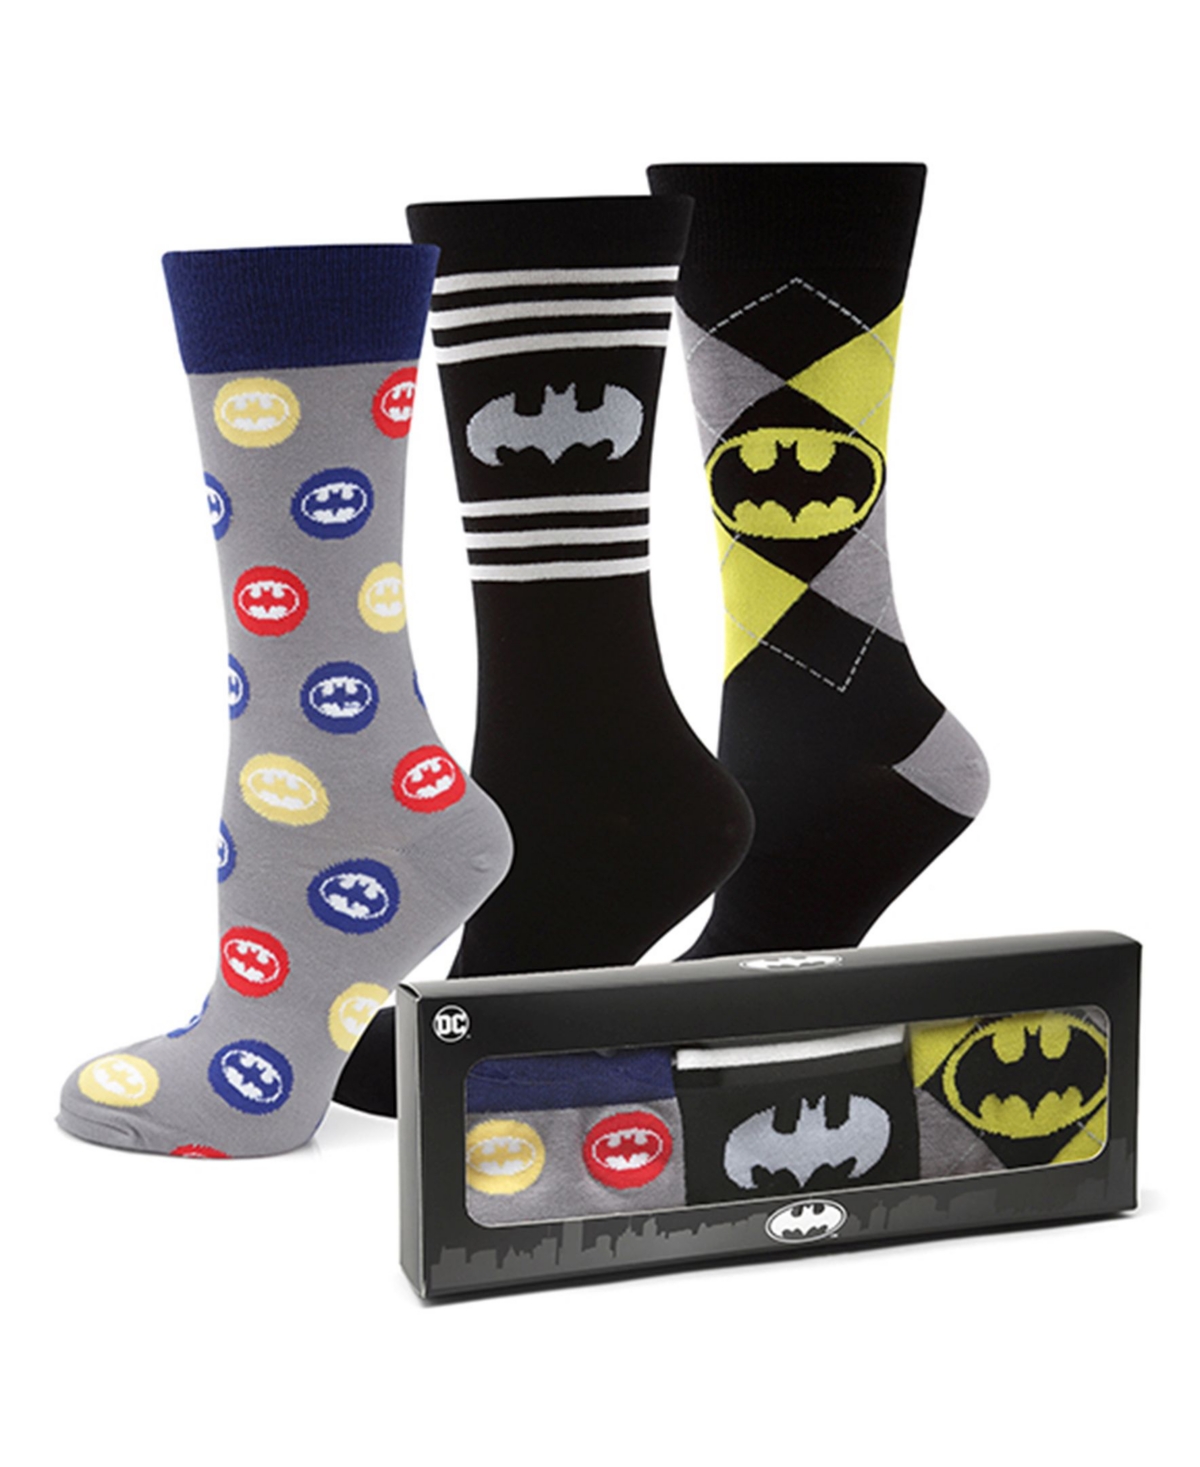 Men's Batman Sock Gift Set, Pack of 3 - Multi